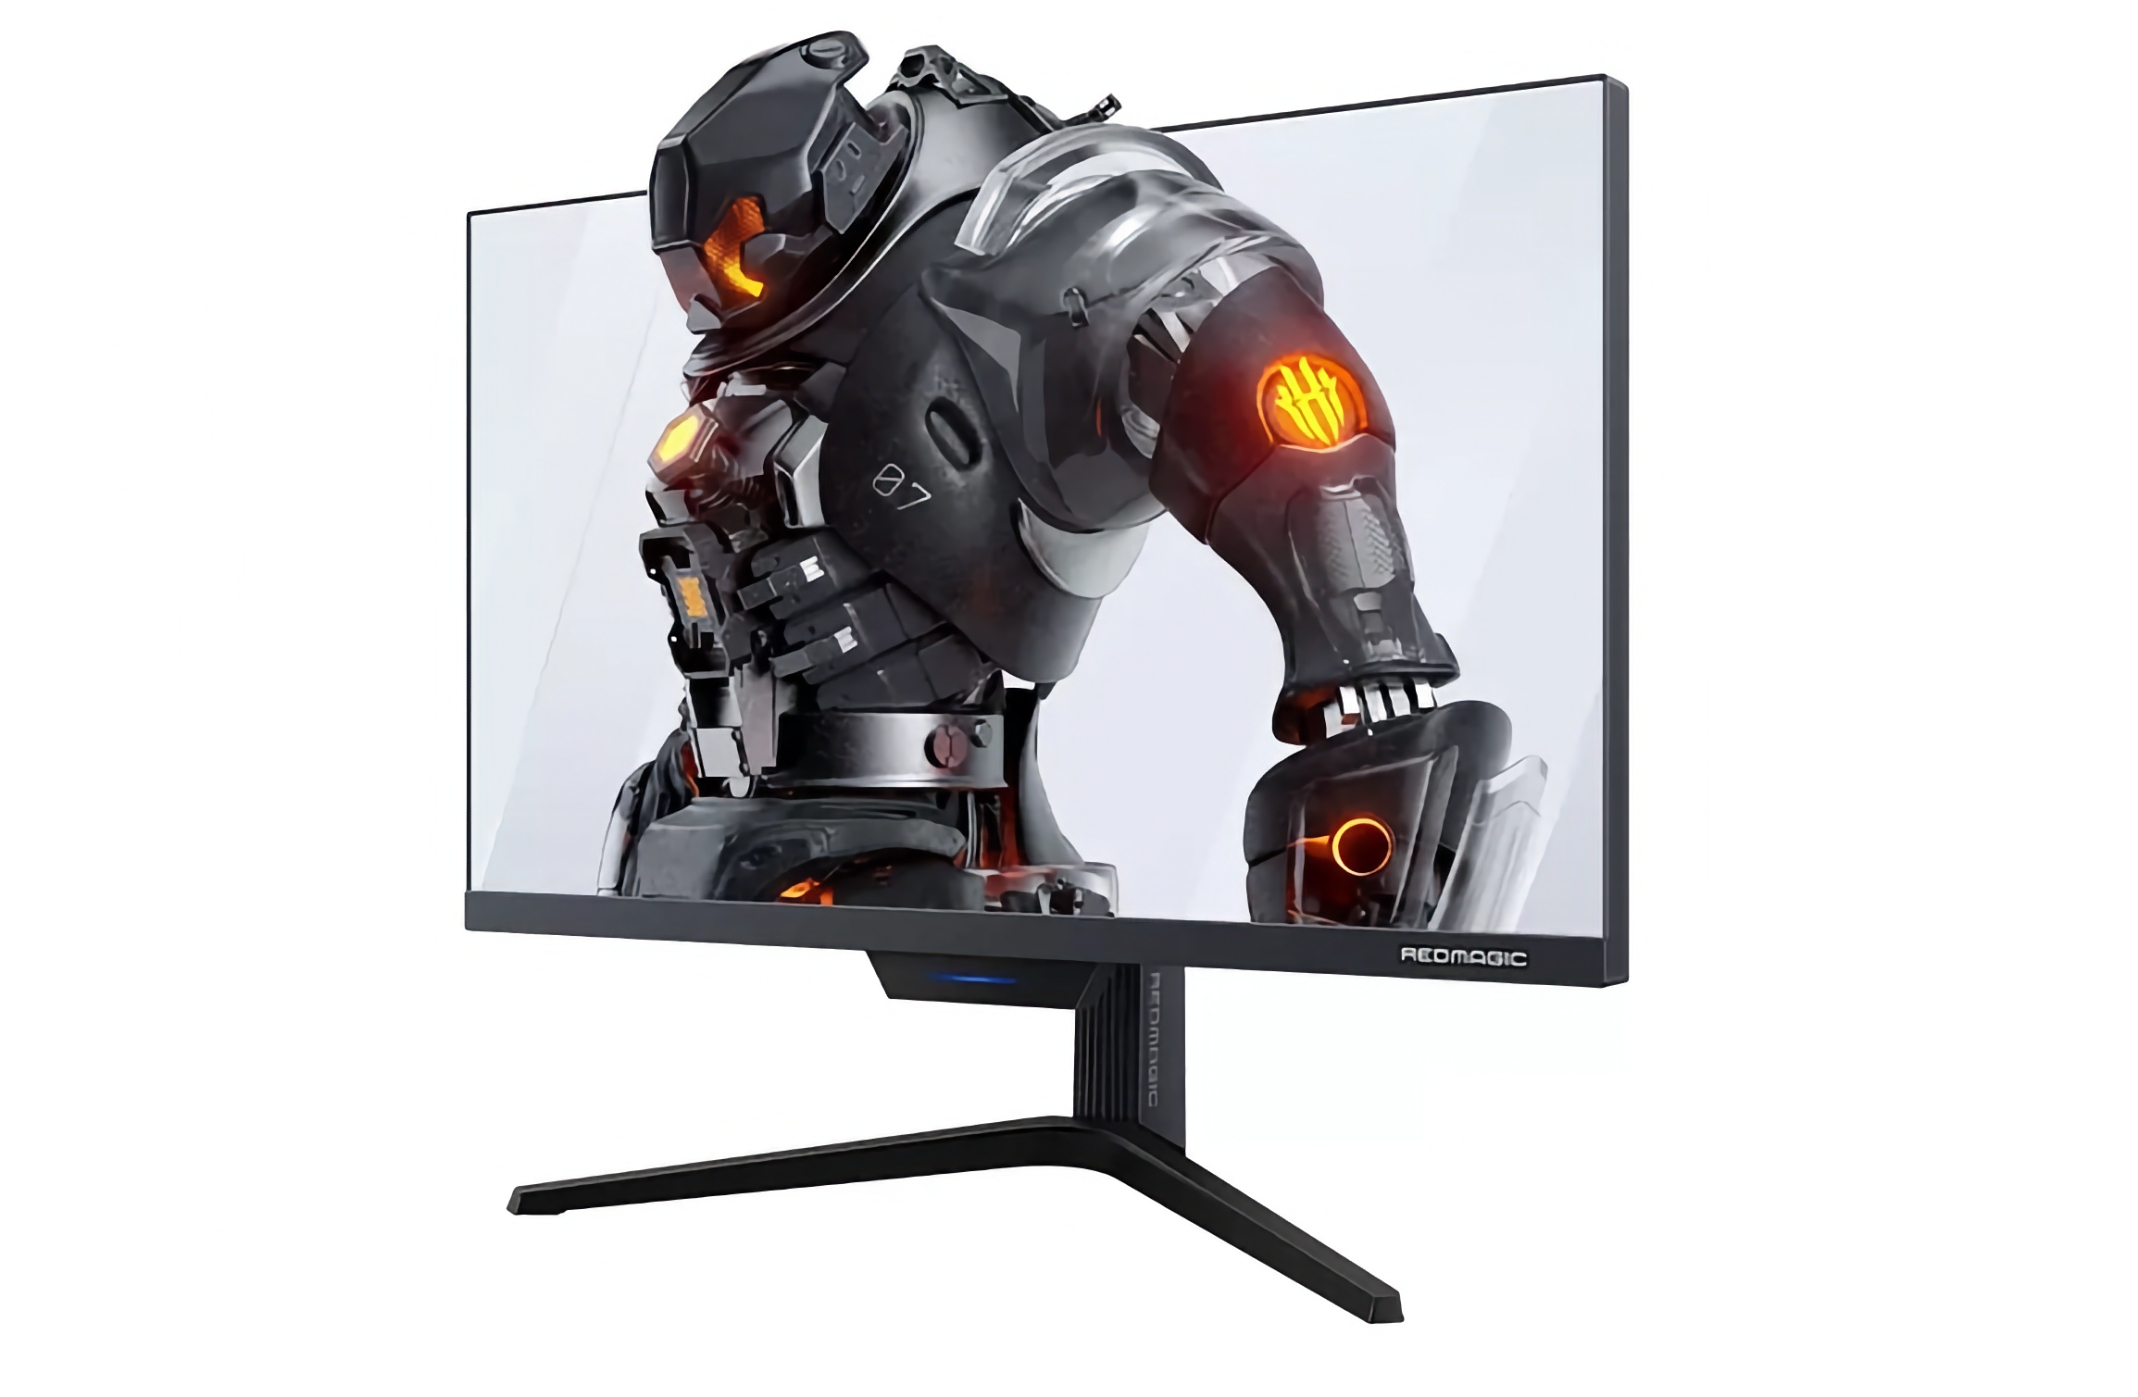 Nubia anuncia un monitor gaming Red Magic con pantalla de 27 pulgadas, resolución 2K y soporte para 240 Hz